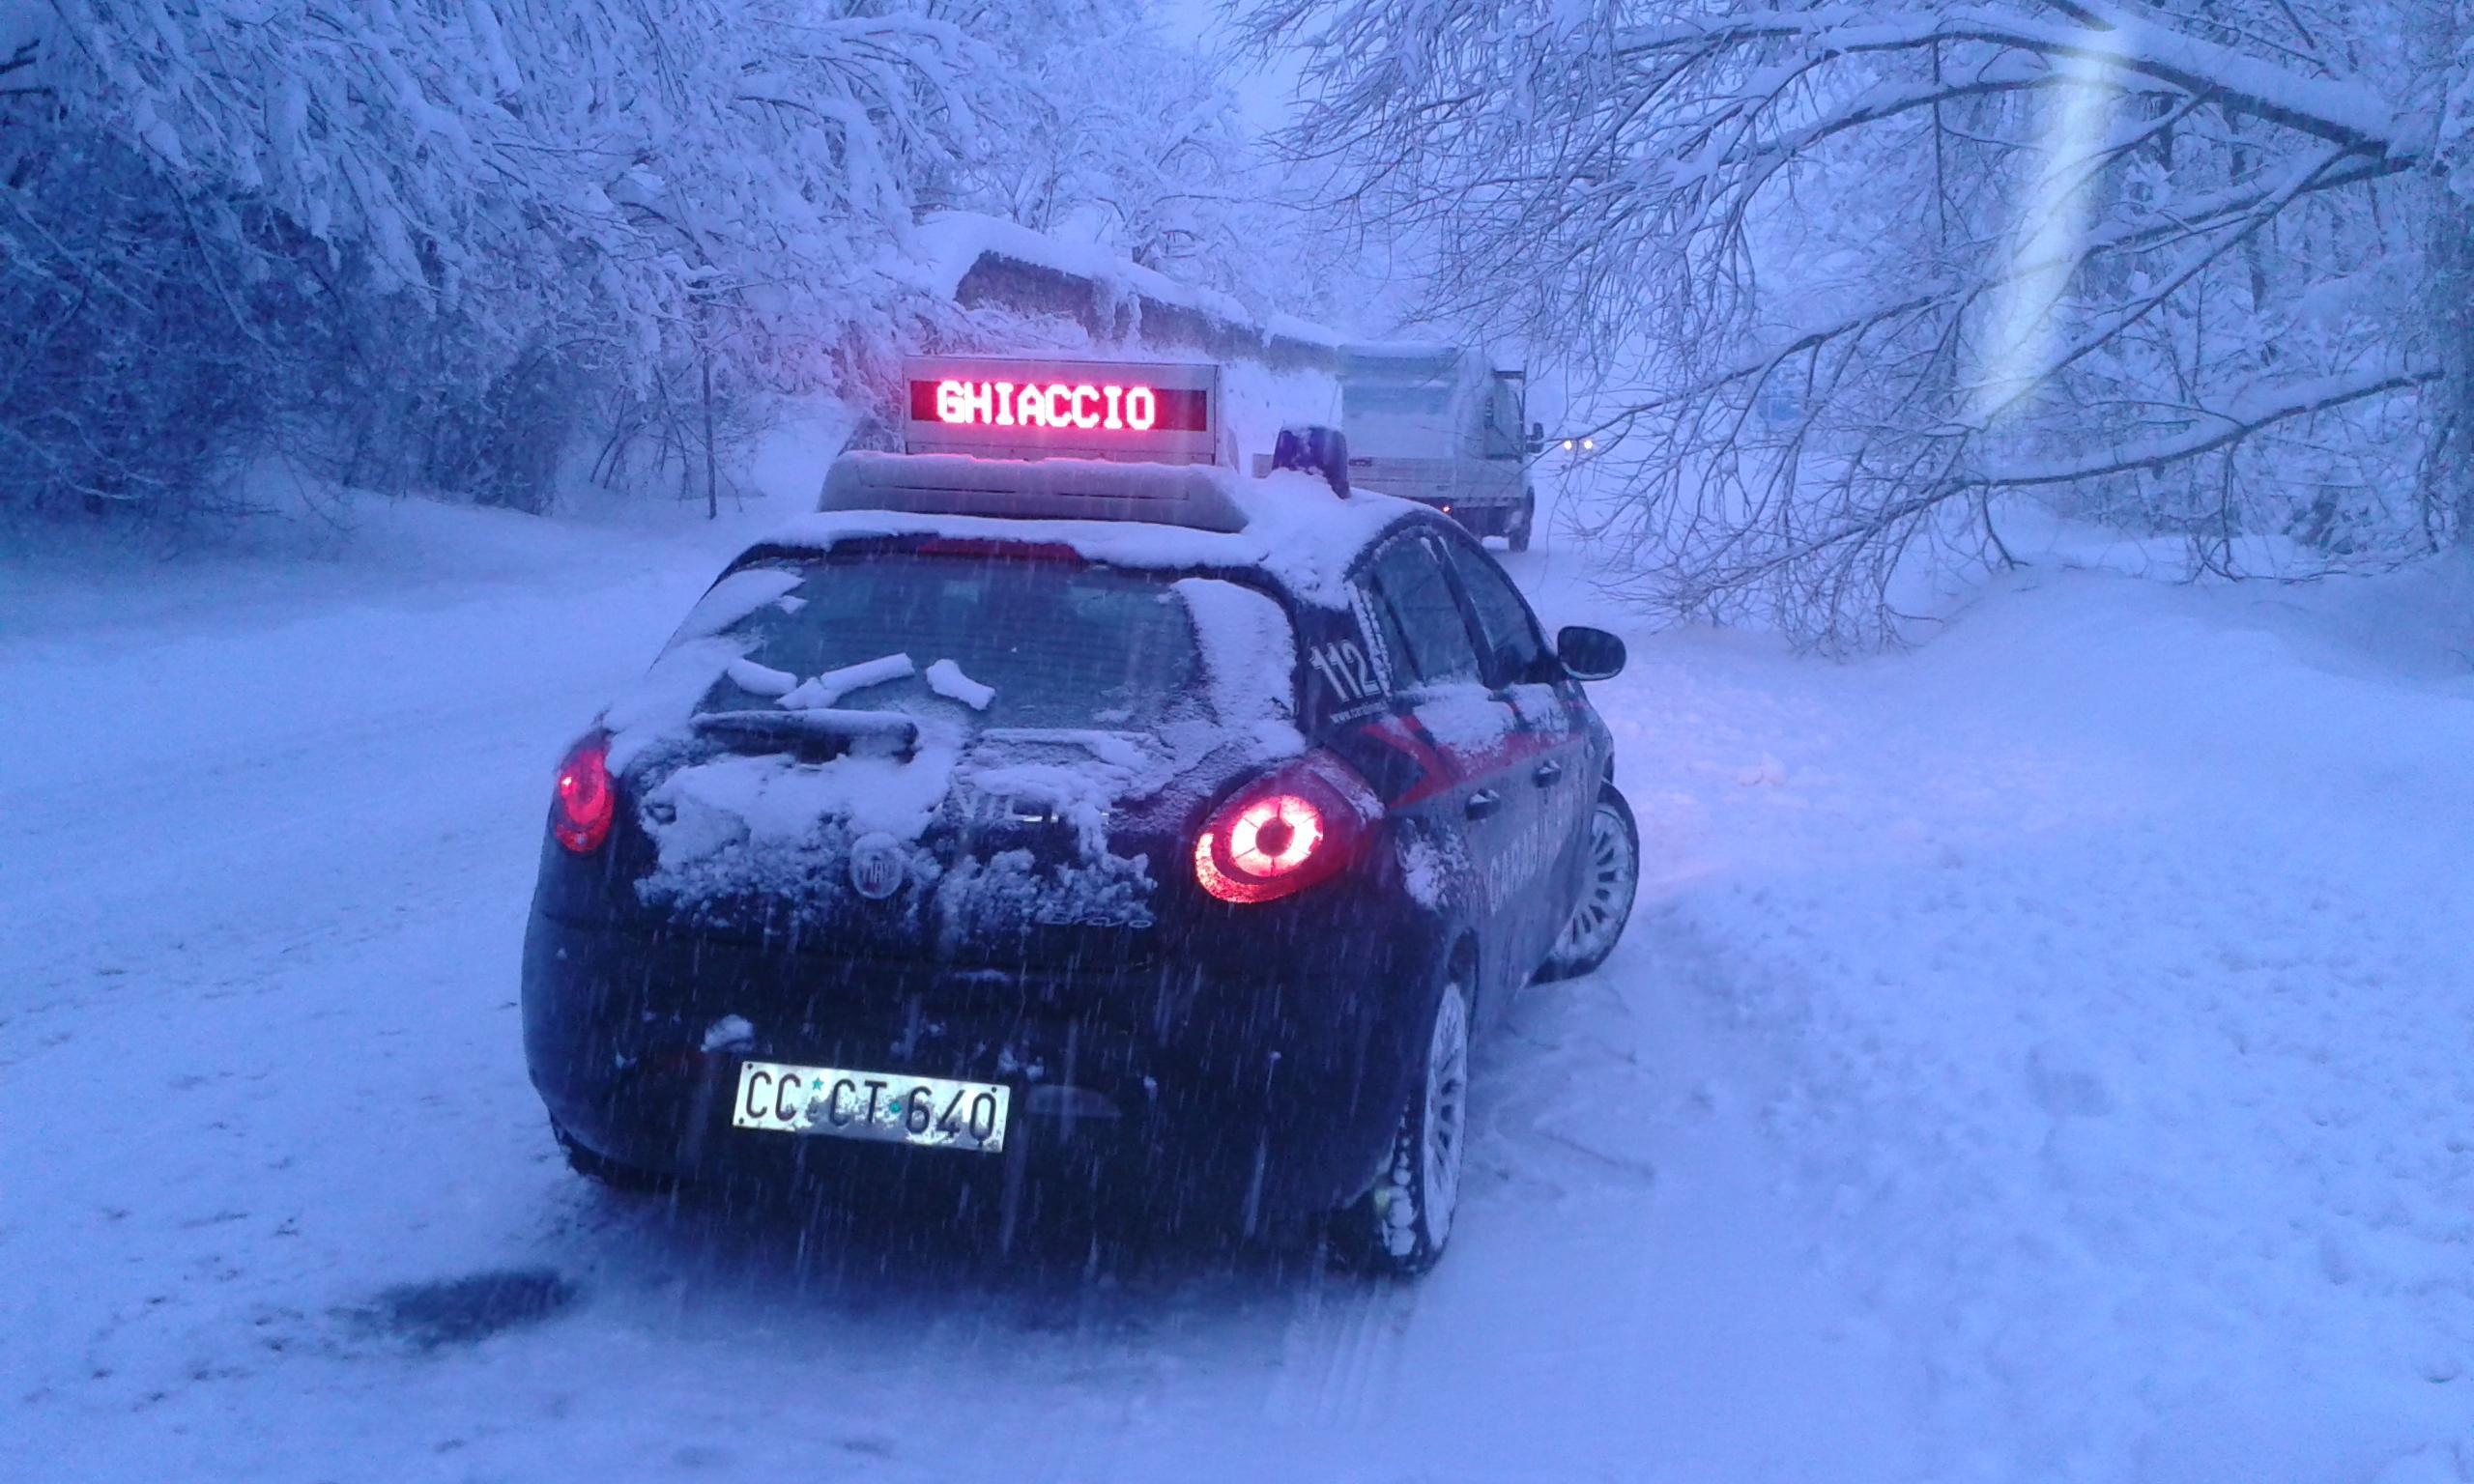 Neve sull'Appennino (Foto Carabinieri Reggio Emilia)